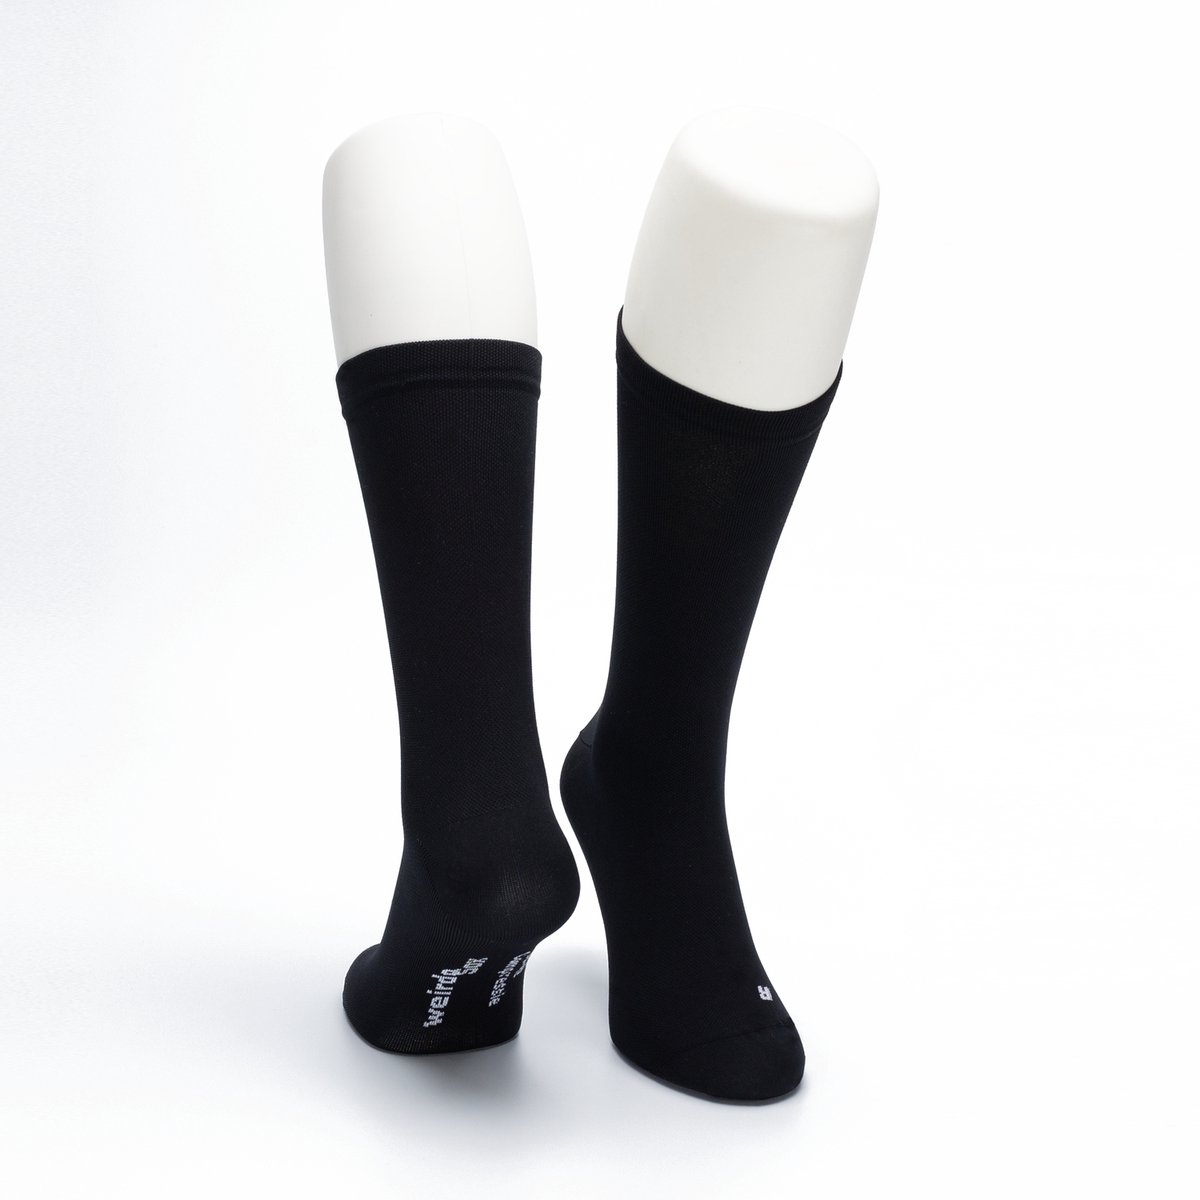 WeirdoSox - Compressie sokken - 22cm Hoog - Steunkousen voor vrouwen en mannen - 1 paar - Zwart 43/46 - Ideaal als compressiekousen hardlopen - compressiekousen vliegtuig